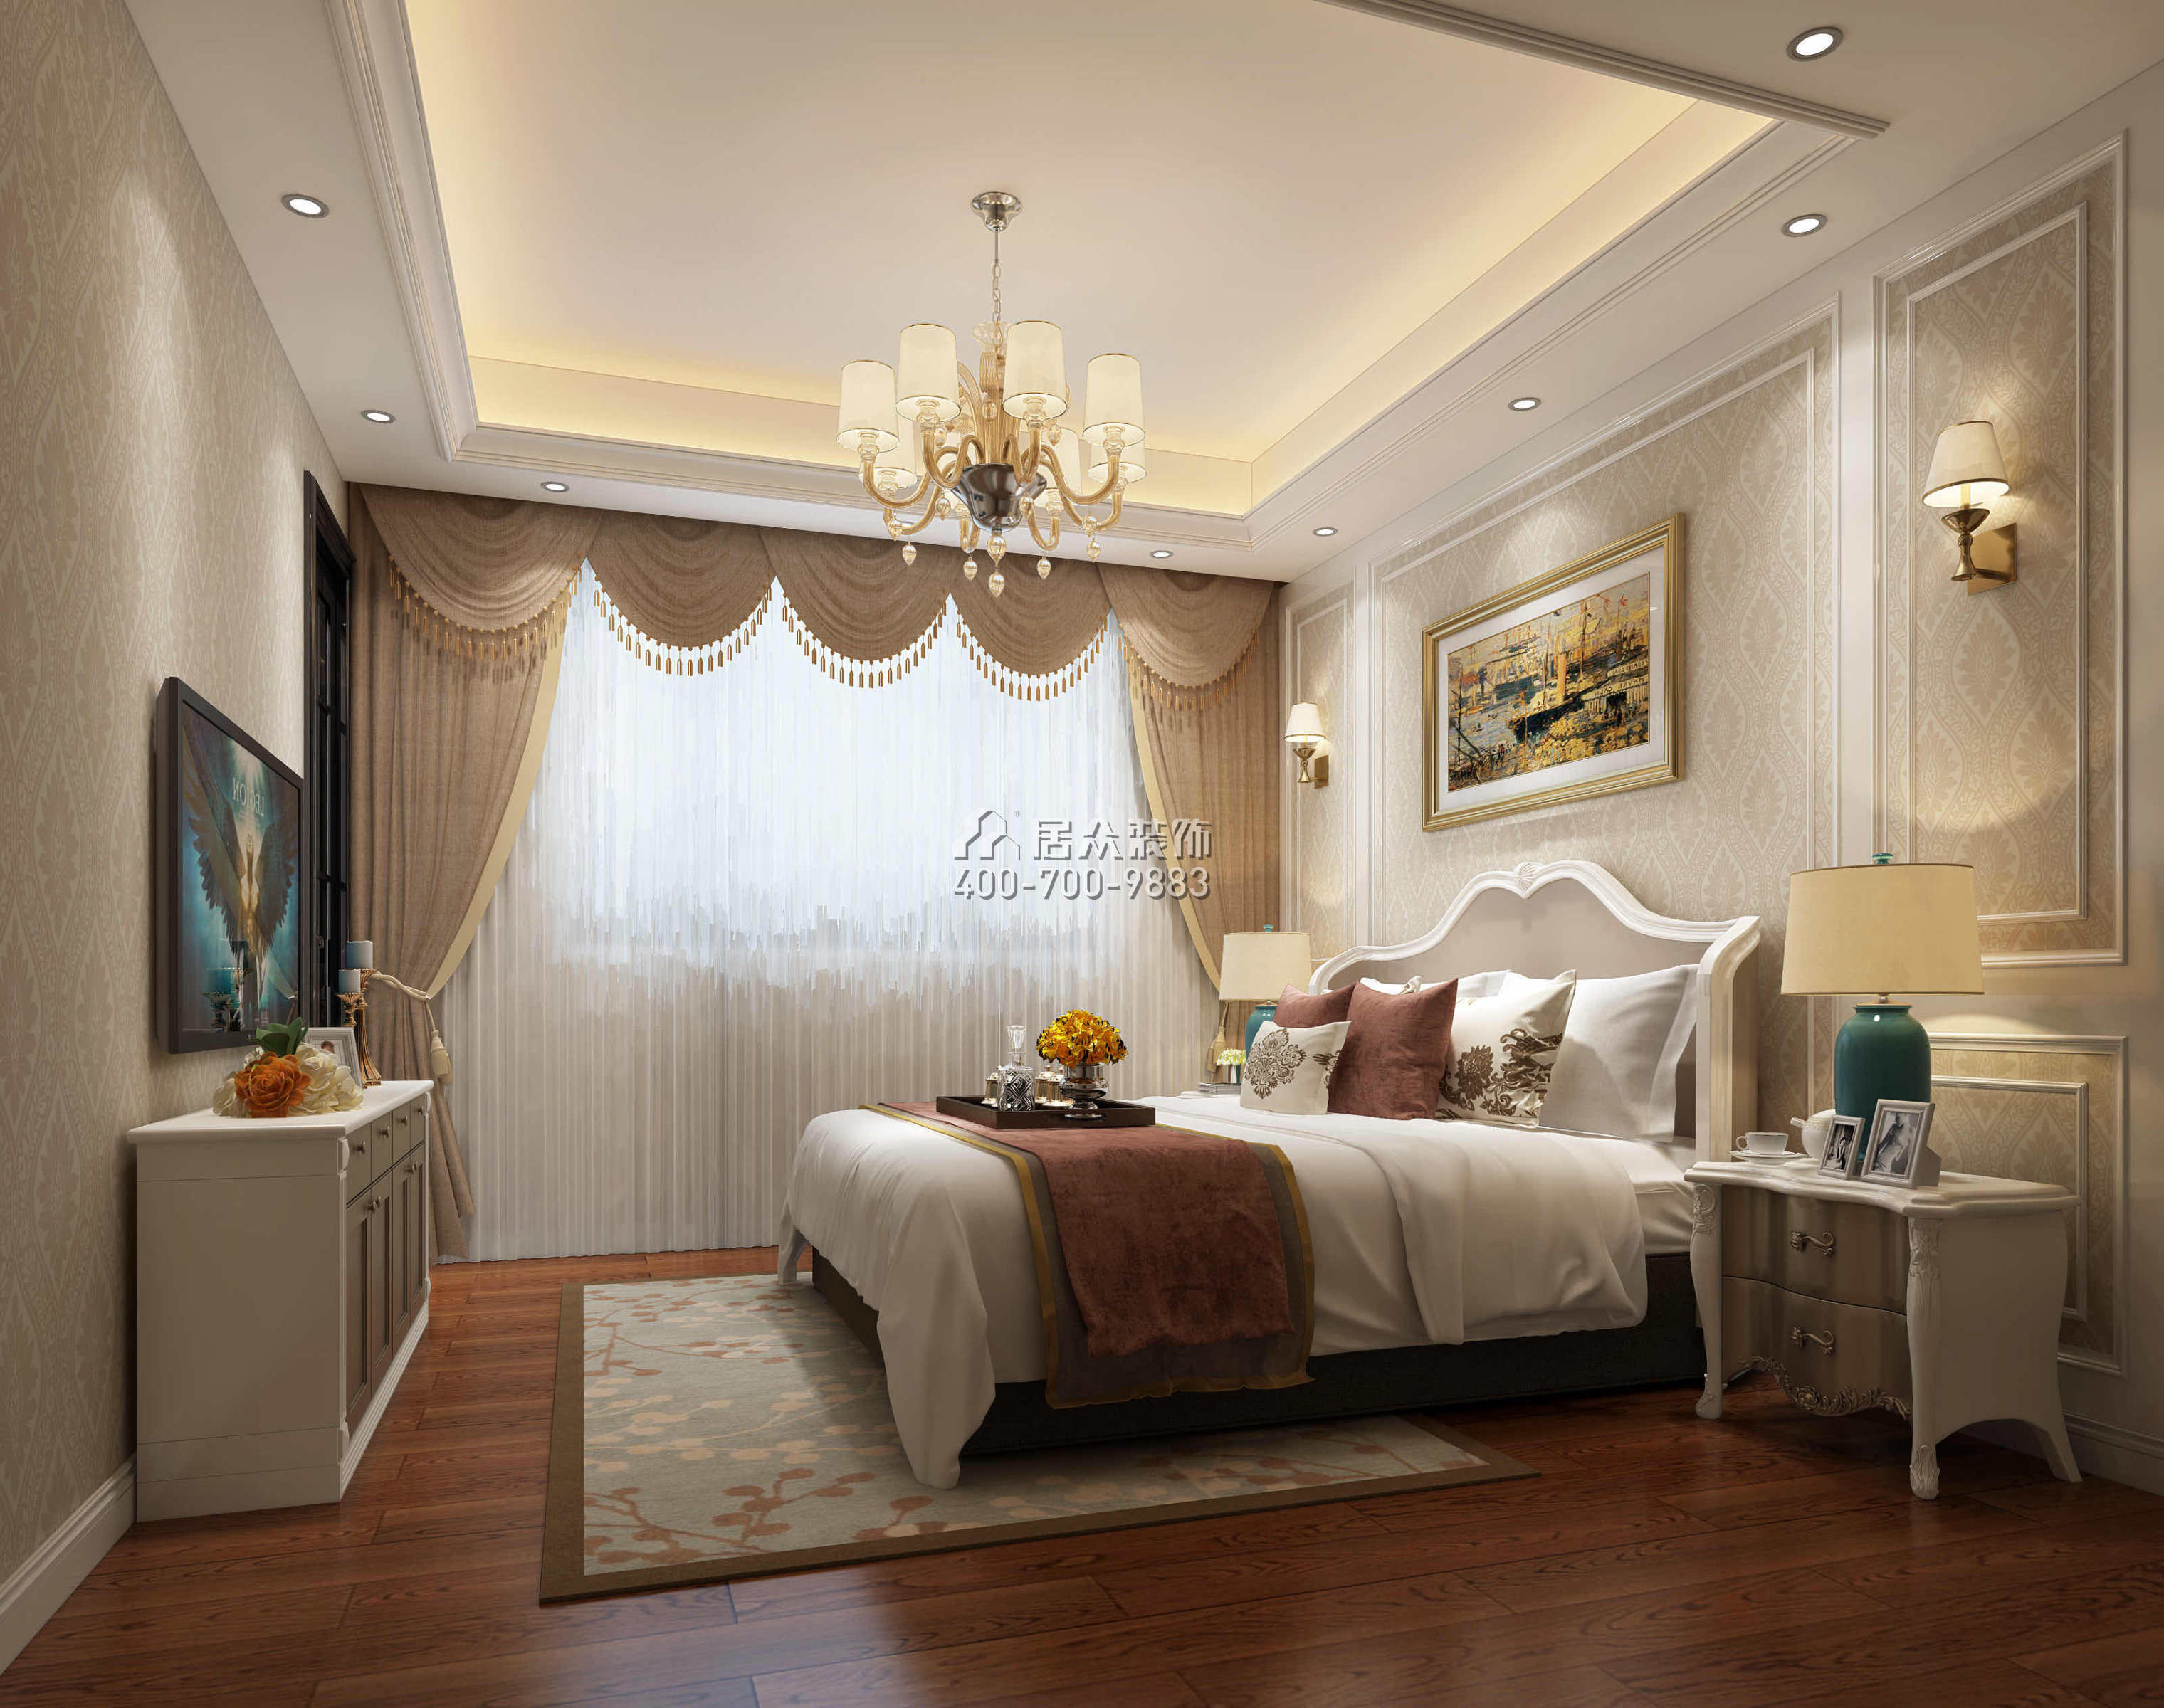 锦绣豪庭380平方米欧式风格别墅户型卧室装修效果图